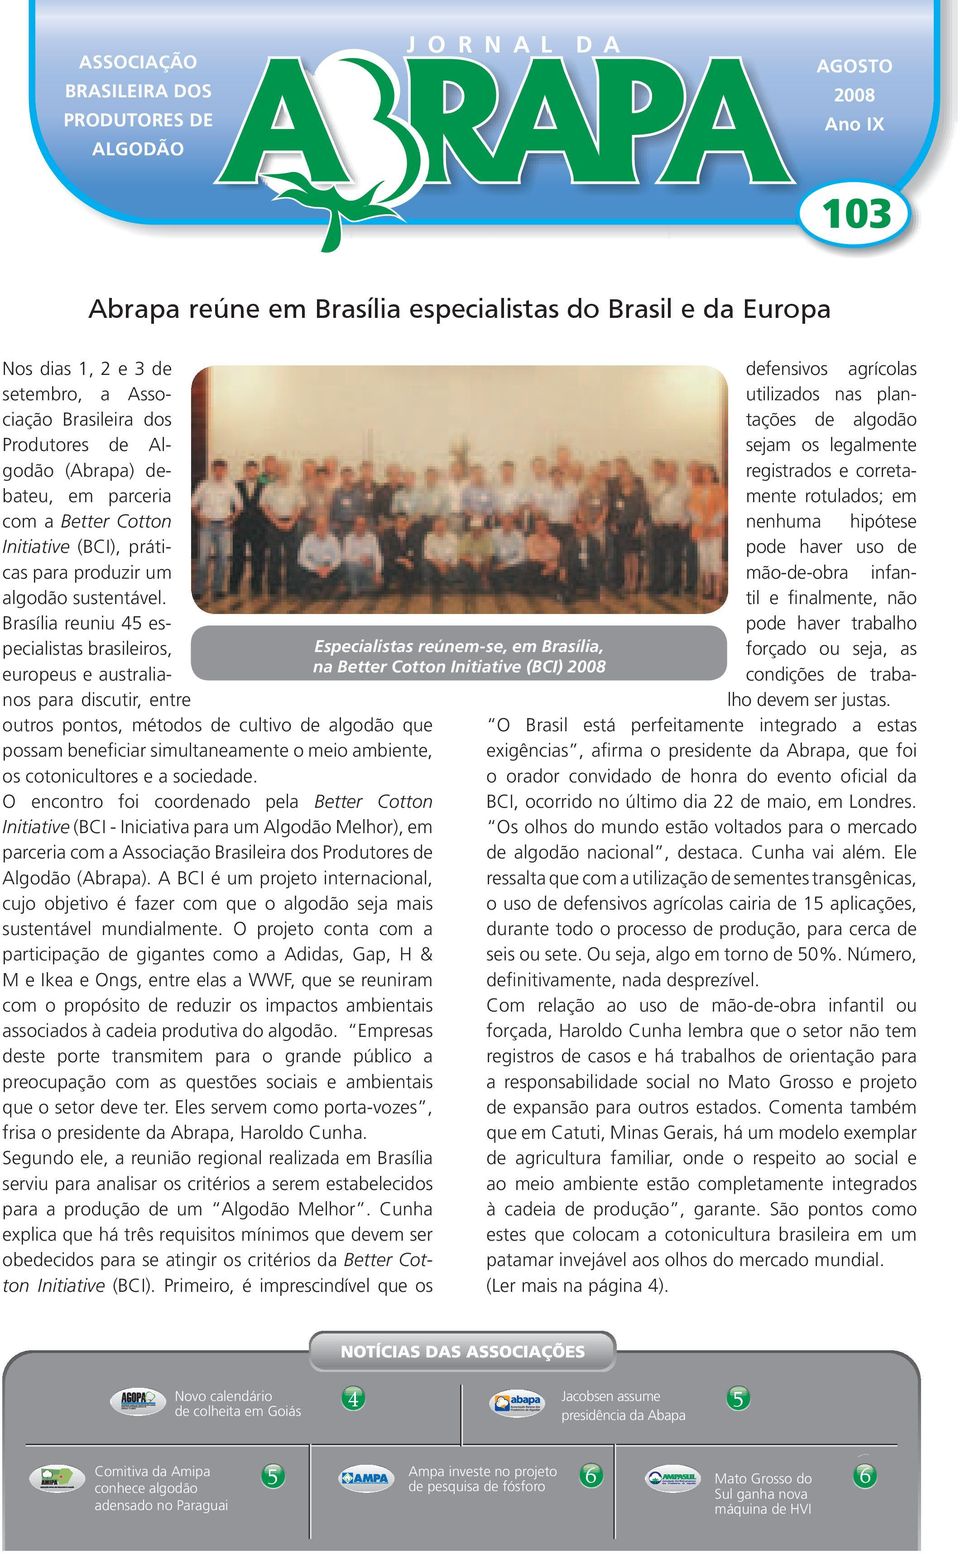 Brasília reuniu 45 especialistas brasileiros, europeus e australianos para discutir, entre outros pontos, métodos de cultivo de algodão que possam beneficiar simultaneamente o meio ambiente, os